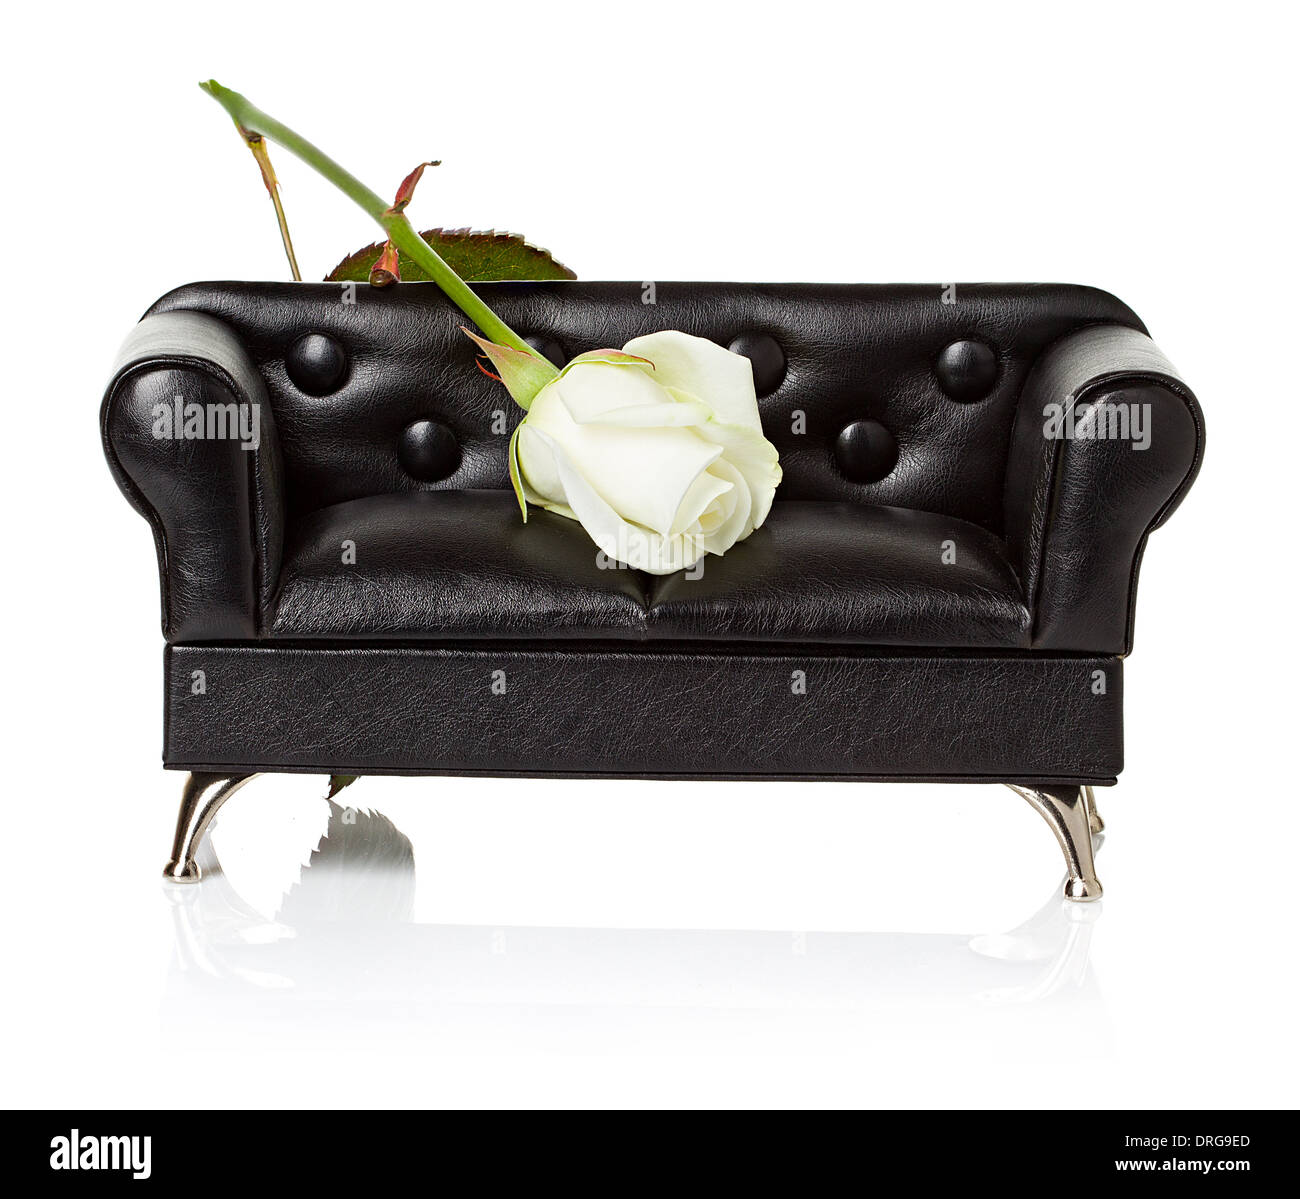 Divano letto, divano con la rosa bianca di close-up isolato Foto Stock